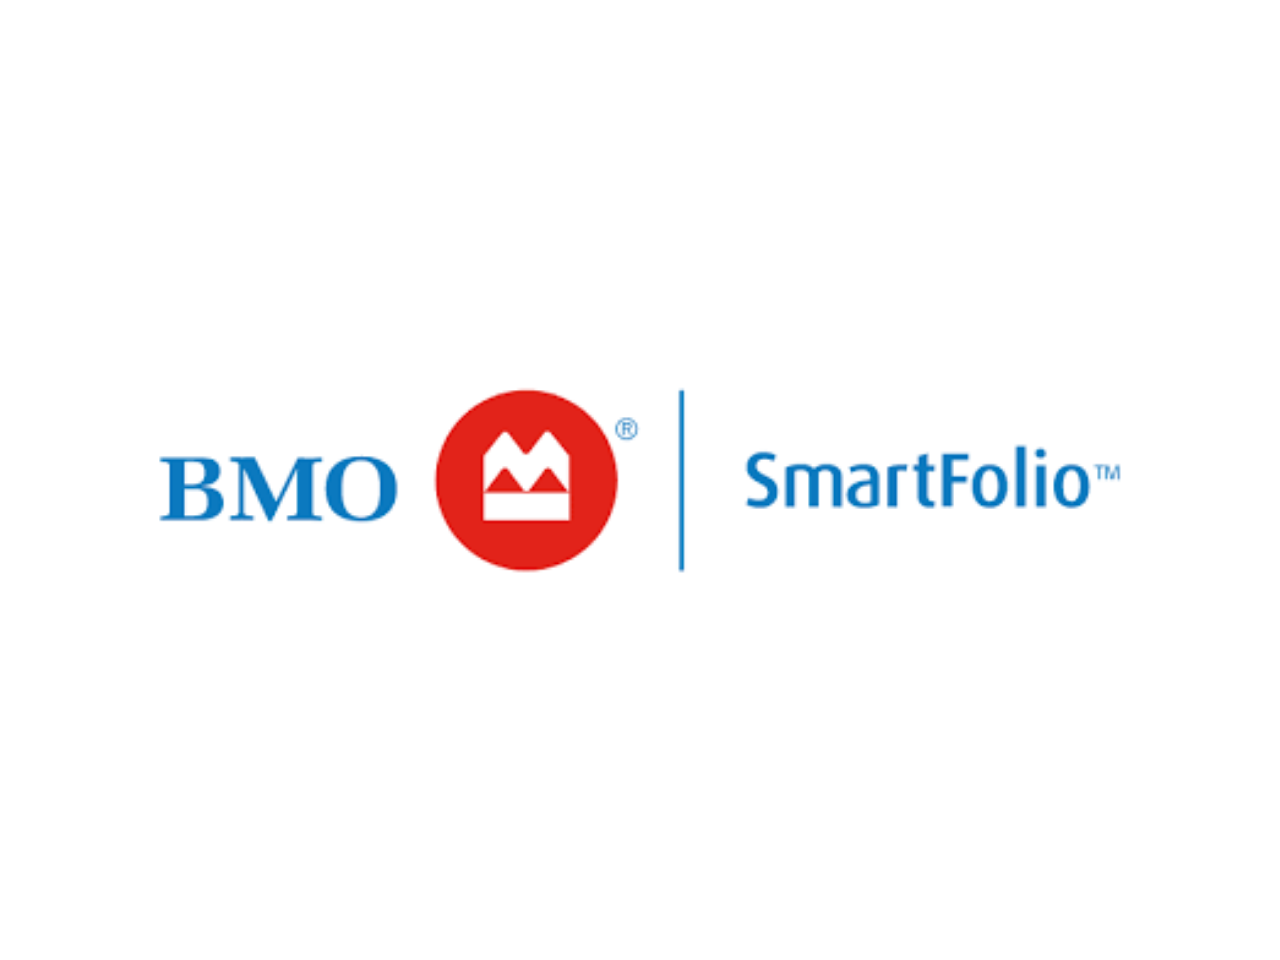 BMO SmartFolio Review